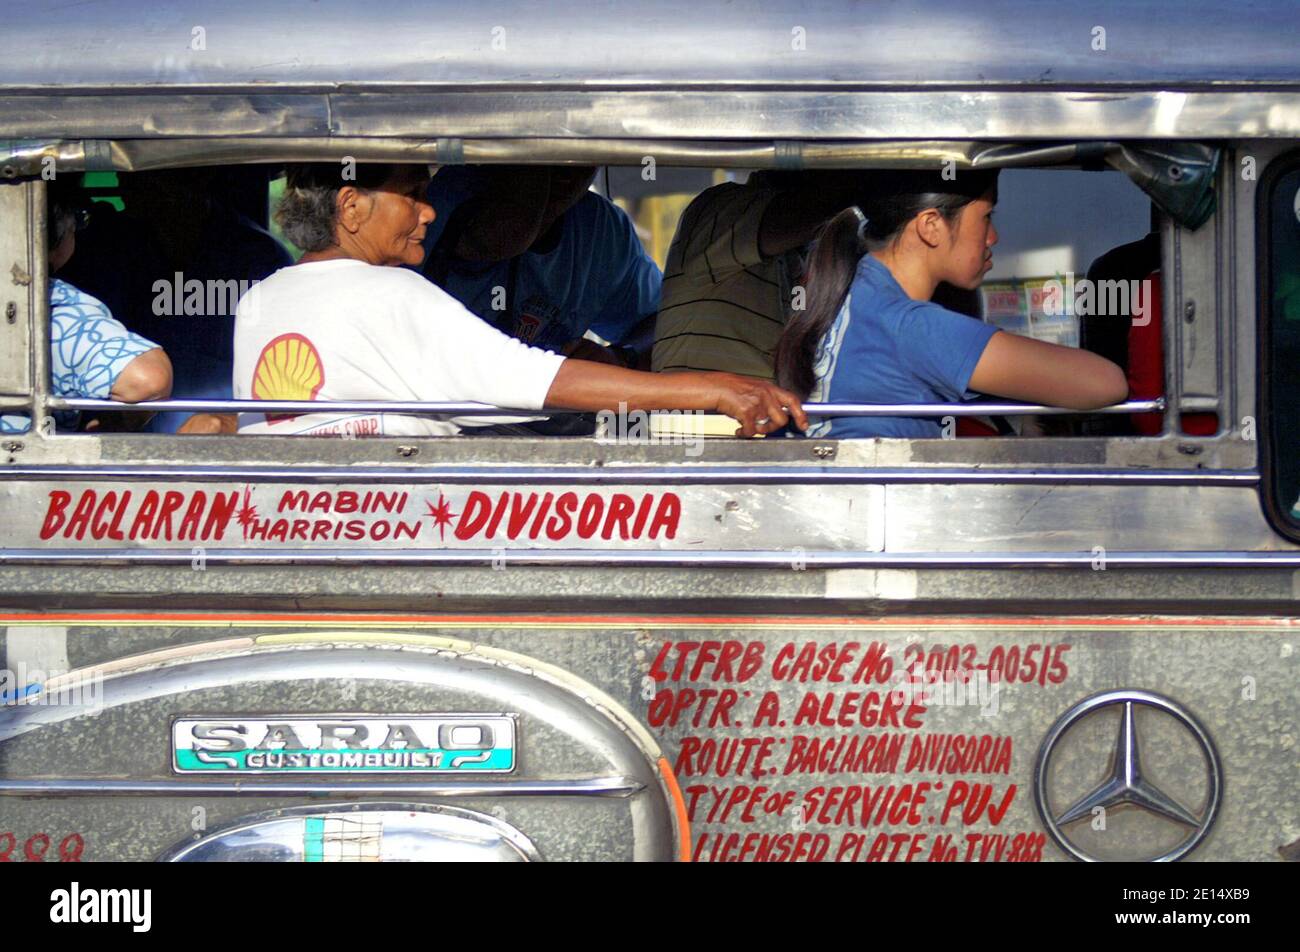 Filipinos nehmen einen Jeepney in Manila, Philippinen. Der ikonische Transport umfasst öffentliche und private Jeepneys wetteifern verschiedene Routen auf der Seite des Fahrzeugs geschrieben. Einzigartig auf den Philippinen, fand diese Art des Transports seine Vorlage in den Überschuss militärischen Jeeps, die von den USA nach dem Zweiten Weltkrieg links In den letzten Jahren wurden die Fahrzeuge stärker reguliert, einschließlich eines Auslaufprogramms von mehr als 15 Jahre alten Jeepneys. Stockfoto